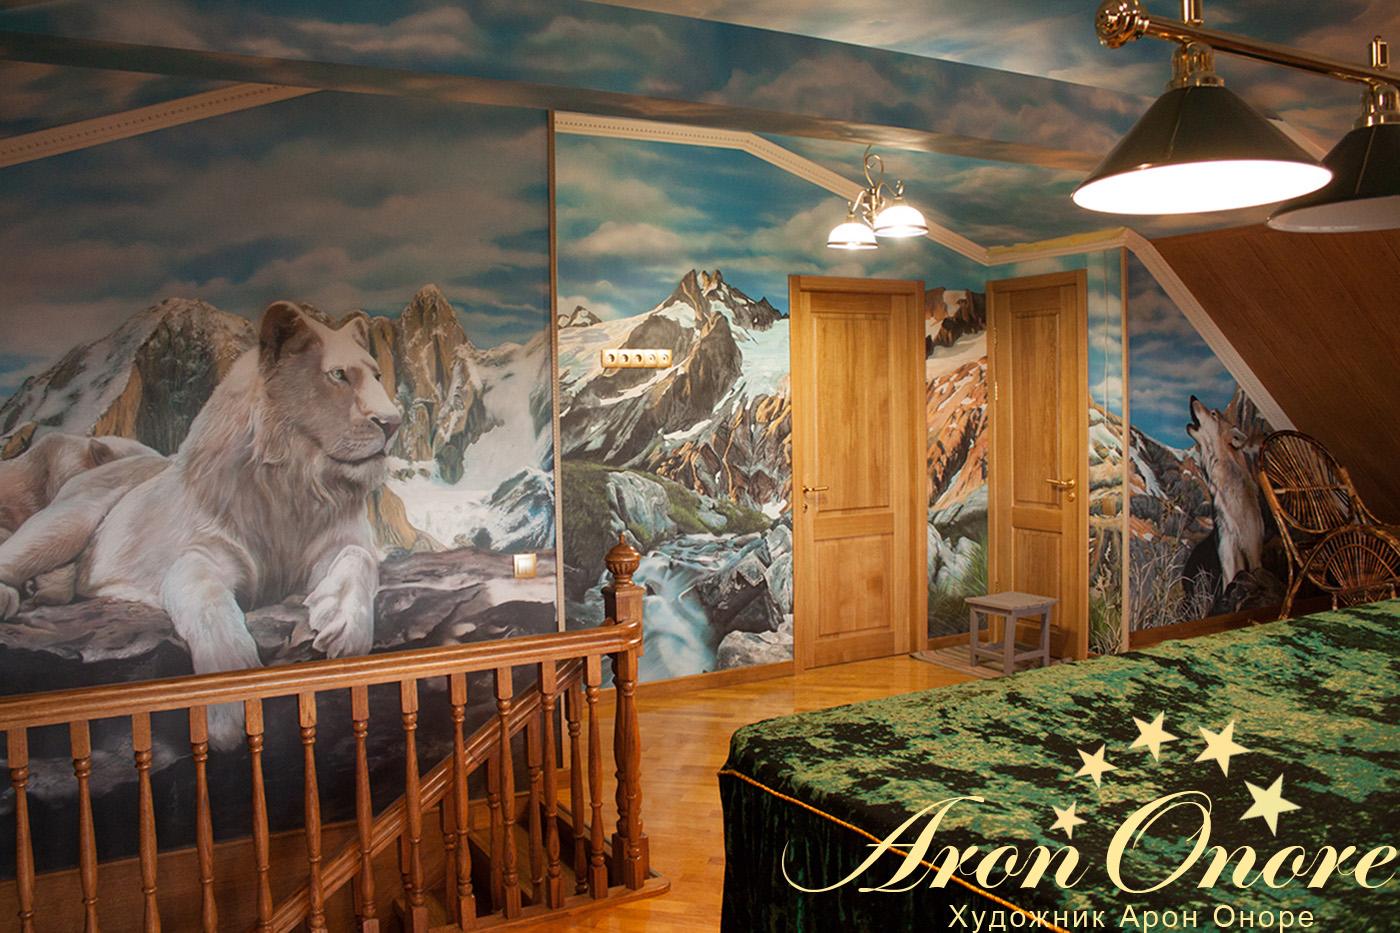 Белый лев – художественный рисунок на стене в бильярдной комнате